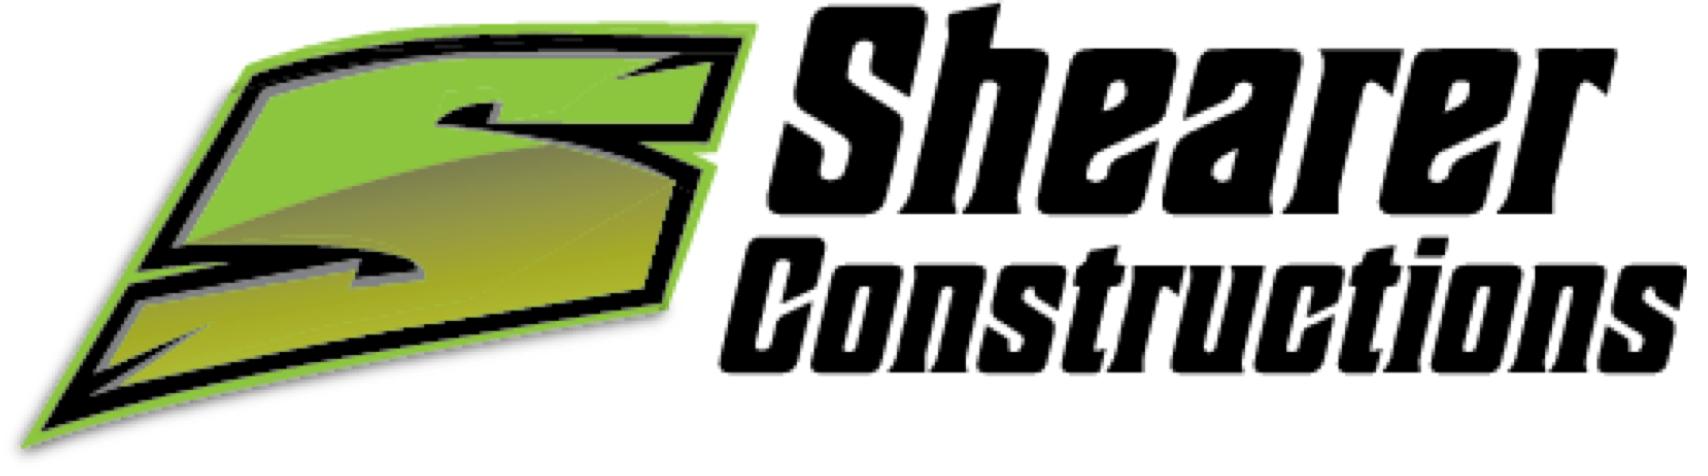 Shearers Construction Logo